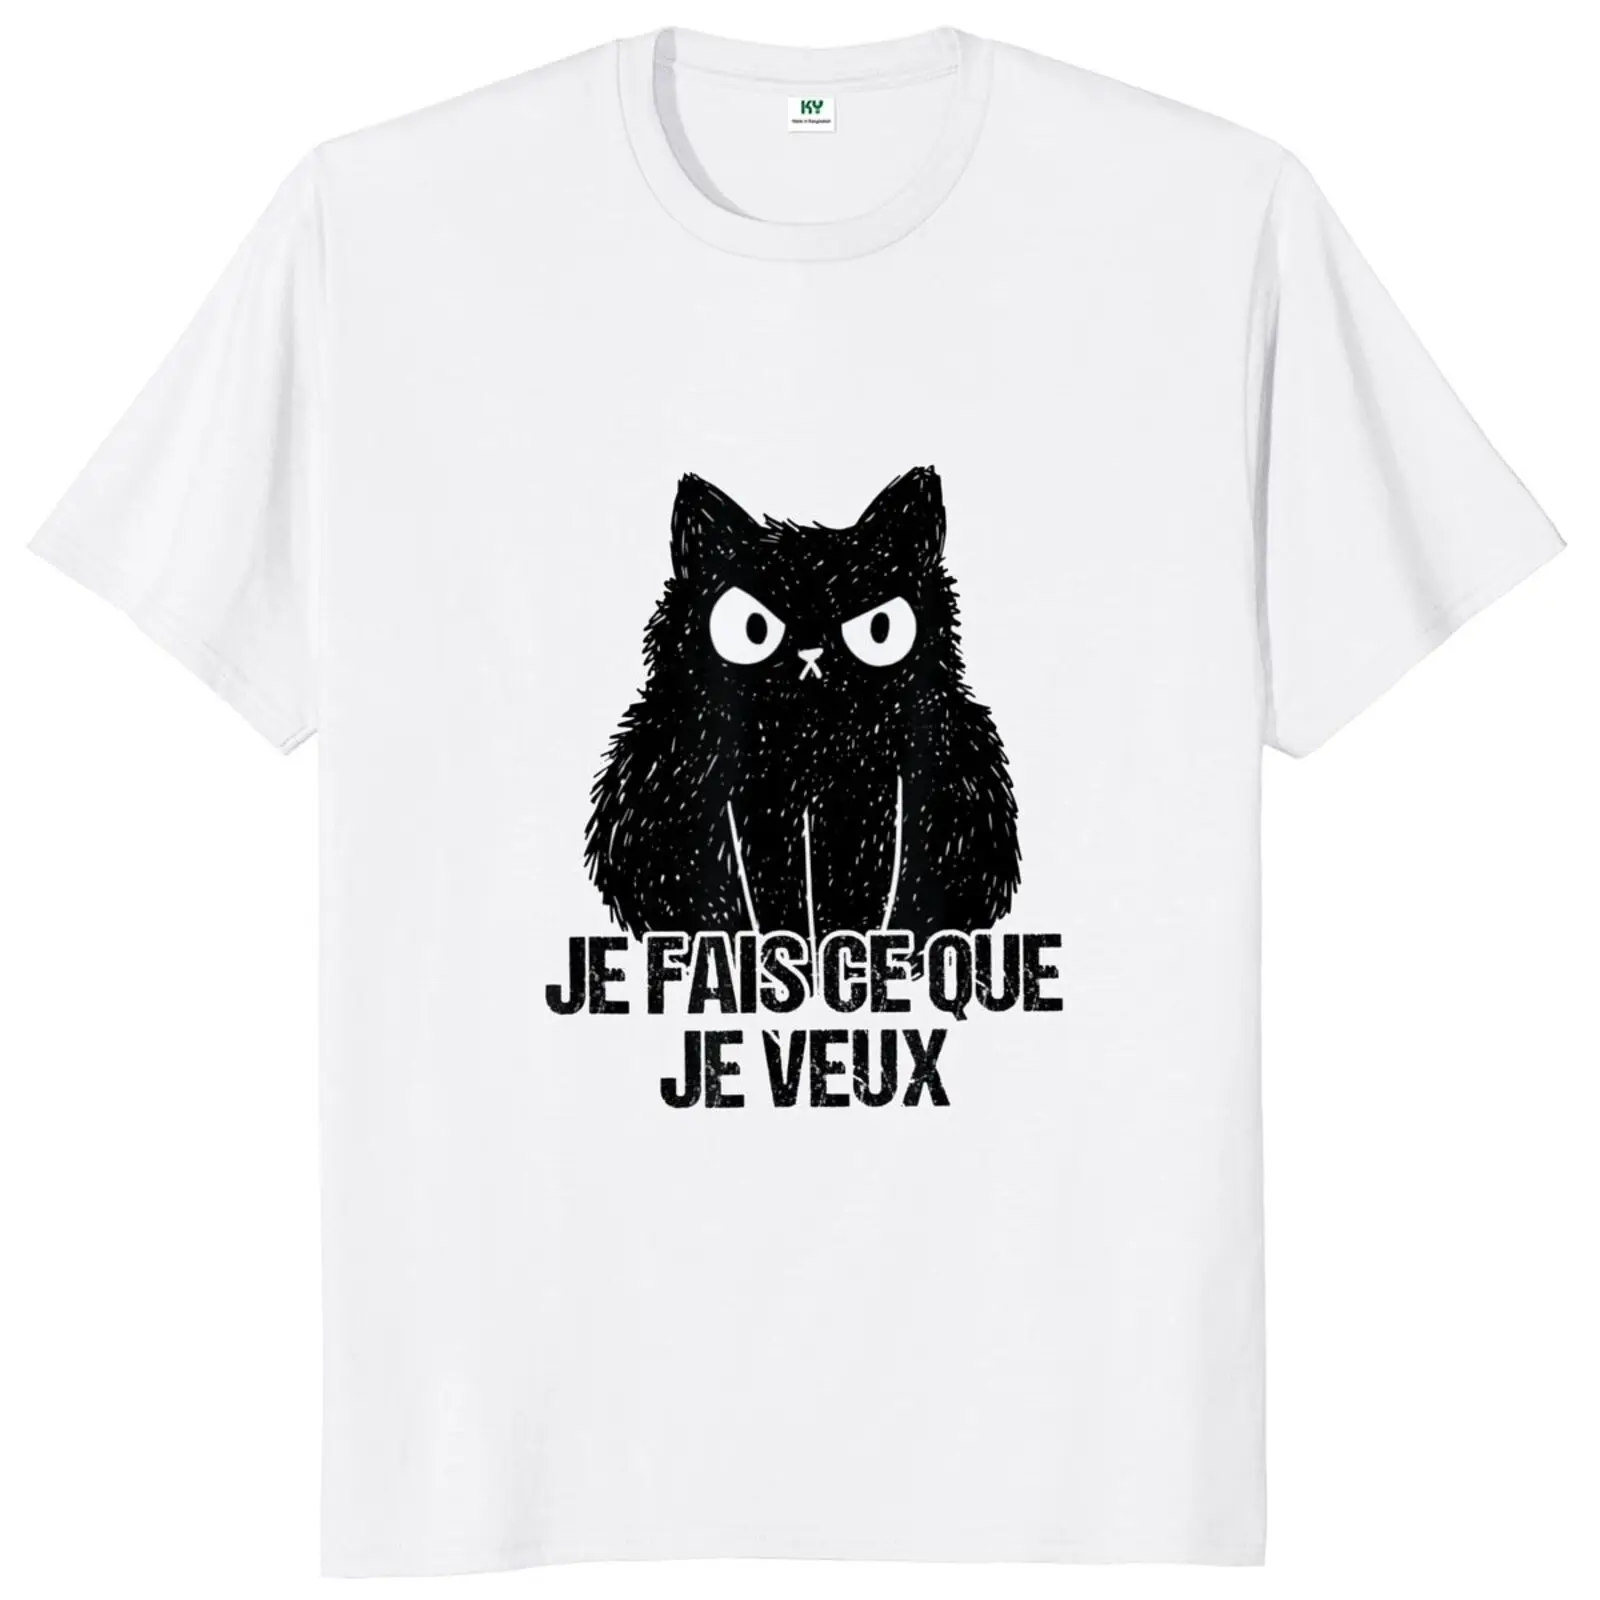 

Футболка с надписью «я делаю то, что хочу», забавная Повседневная футболка унисекс из 100% хлопка с короткими рукавами для влюбленных милых кошек и животных